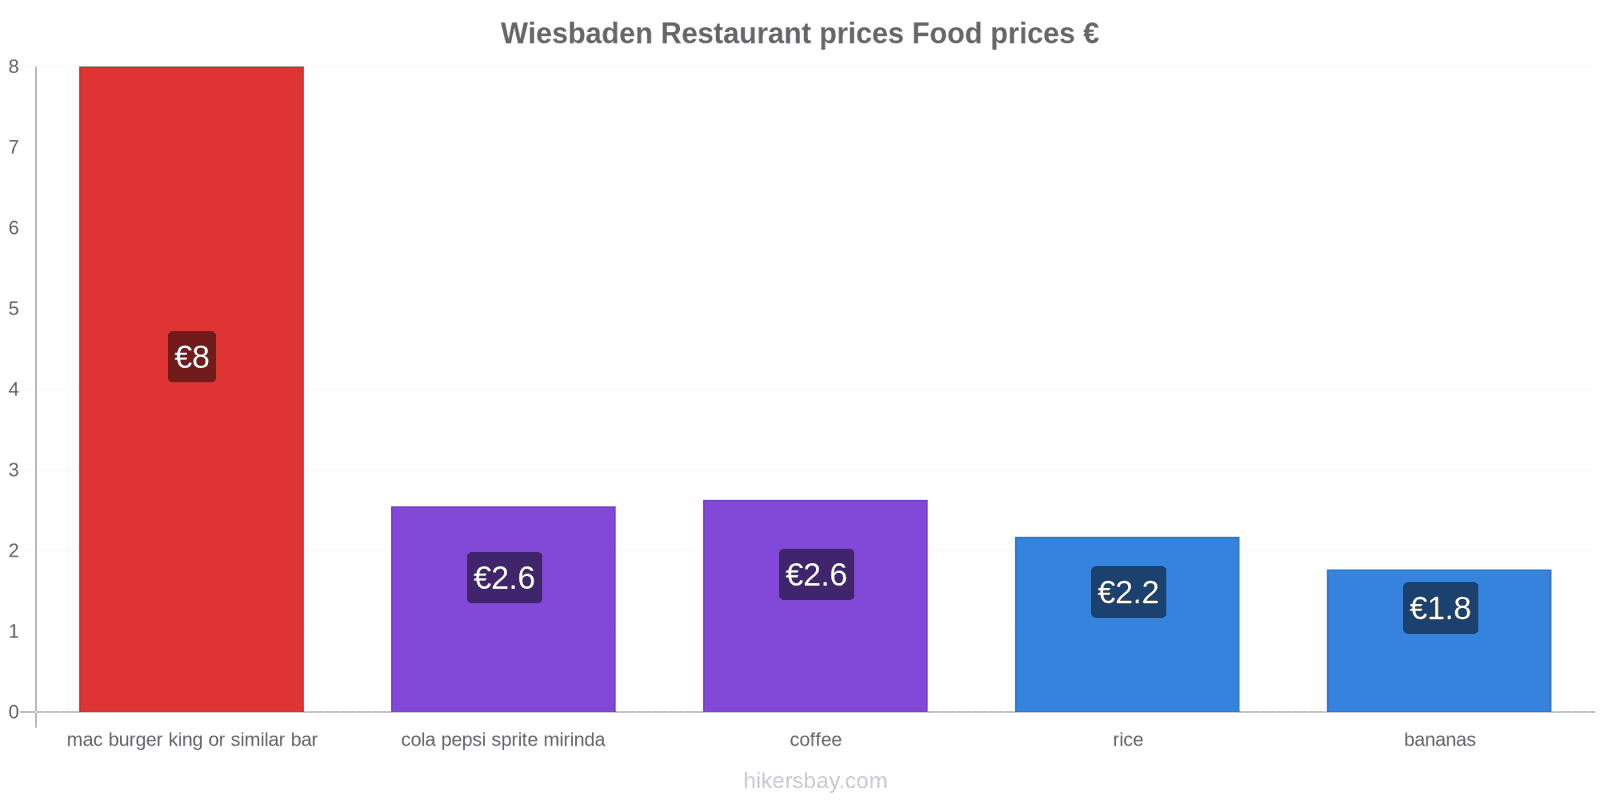 Wiesbaden price changes hikersbay.com